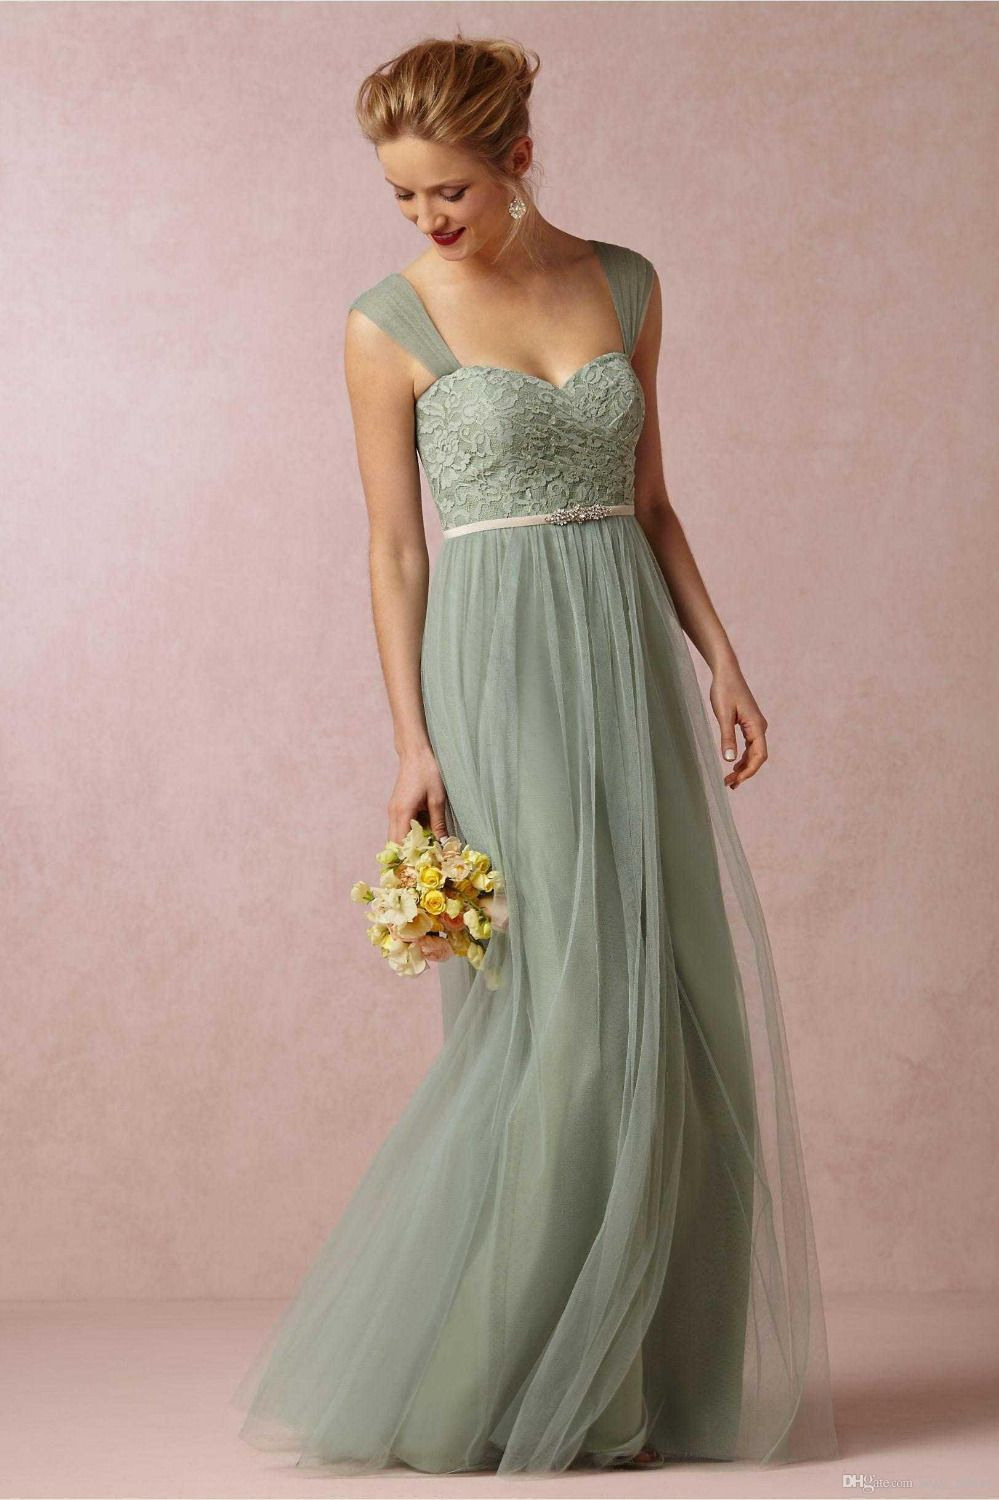 Günstige Elegante Einfache Lange Brautjungfer Kleid 2016